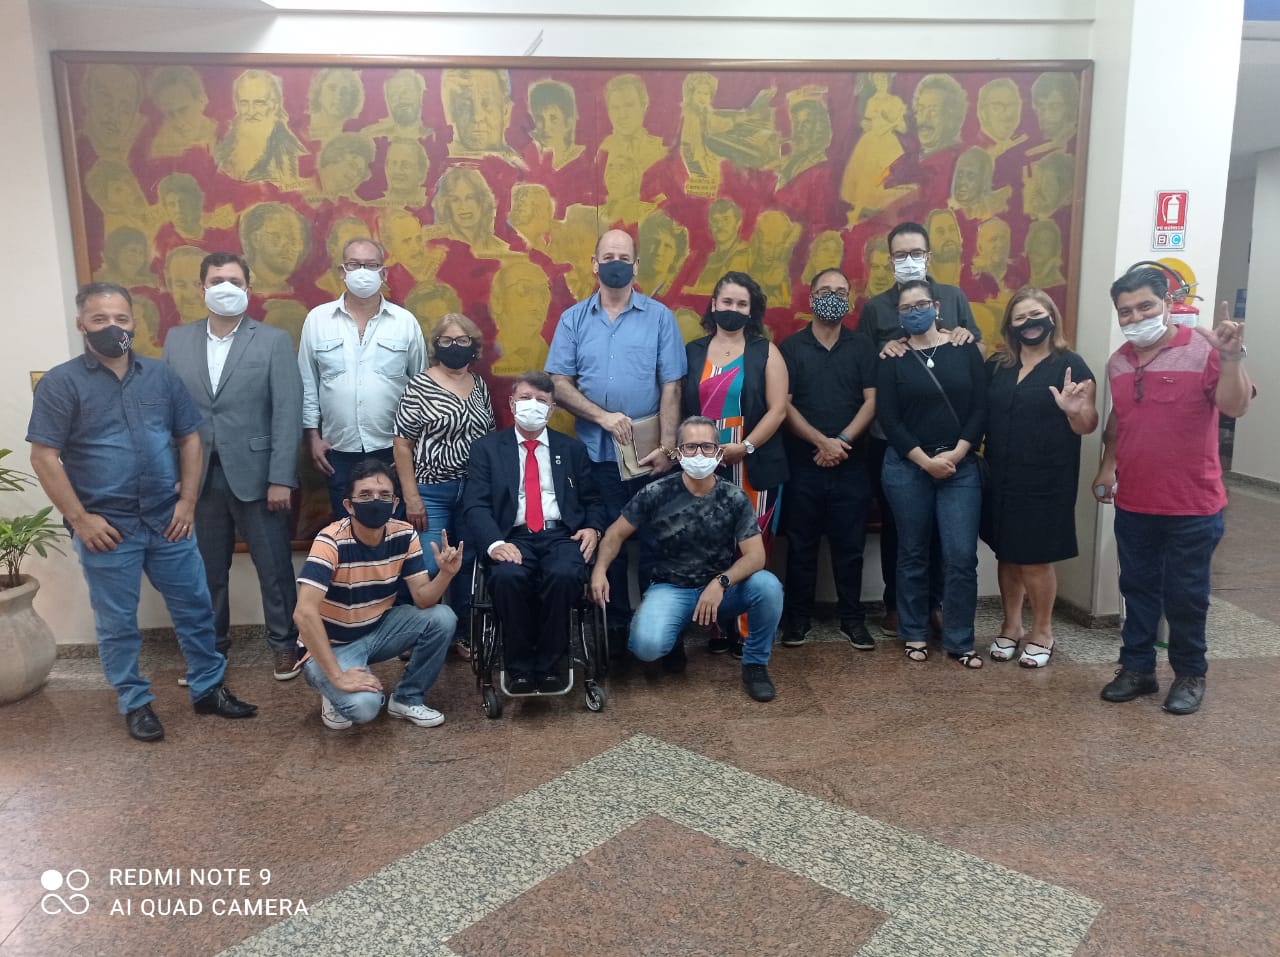 Willian Veloso recebe visita de comitiva da Associação de Surdos de Goiânia